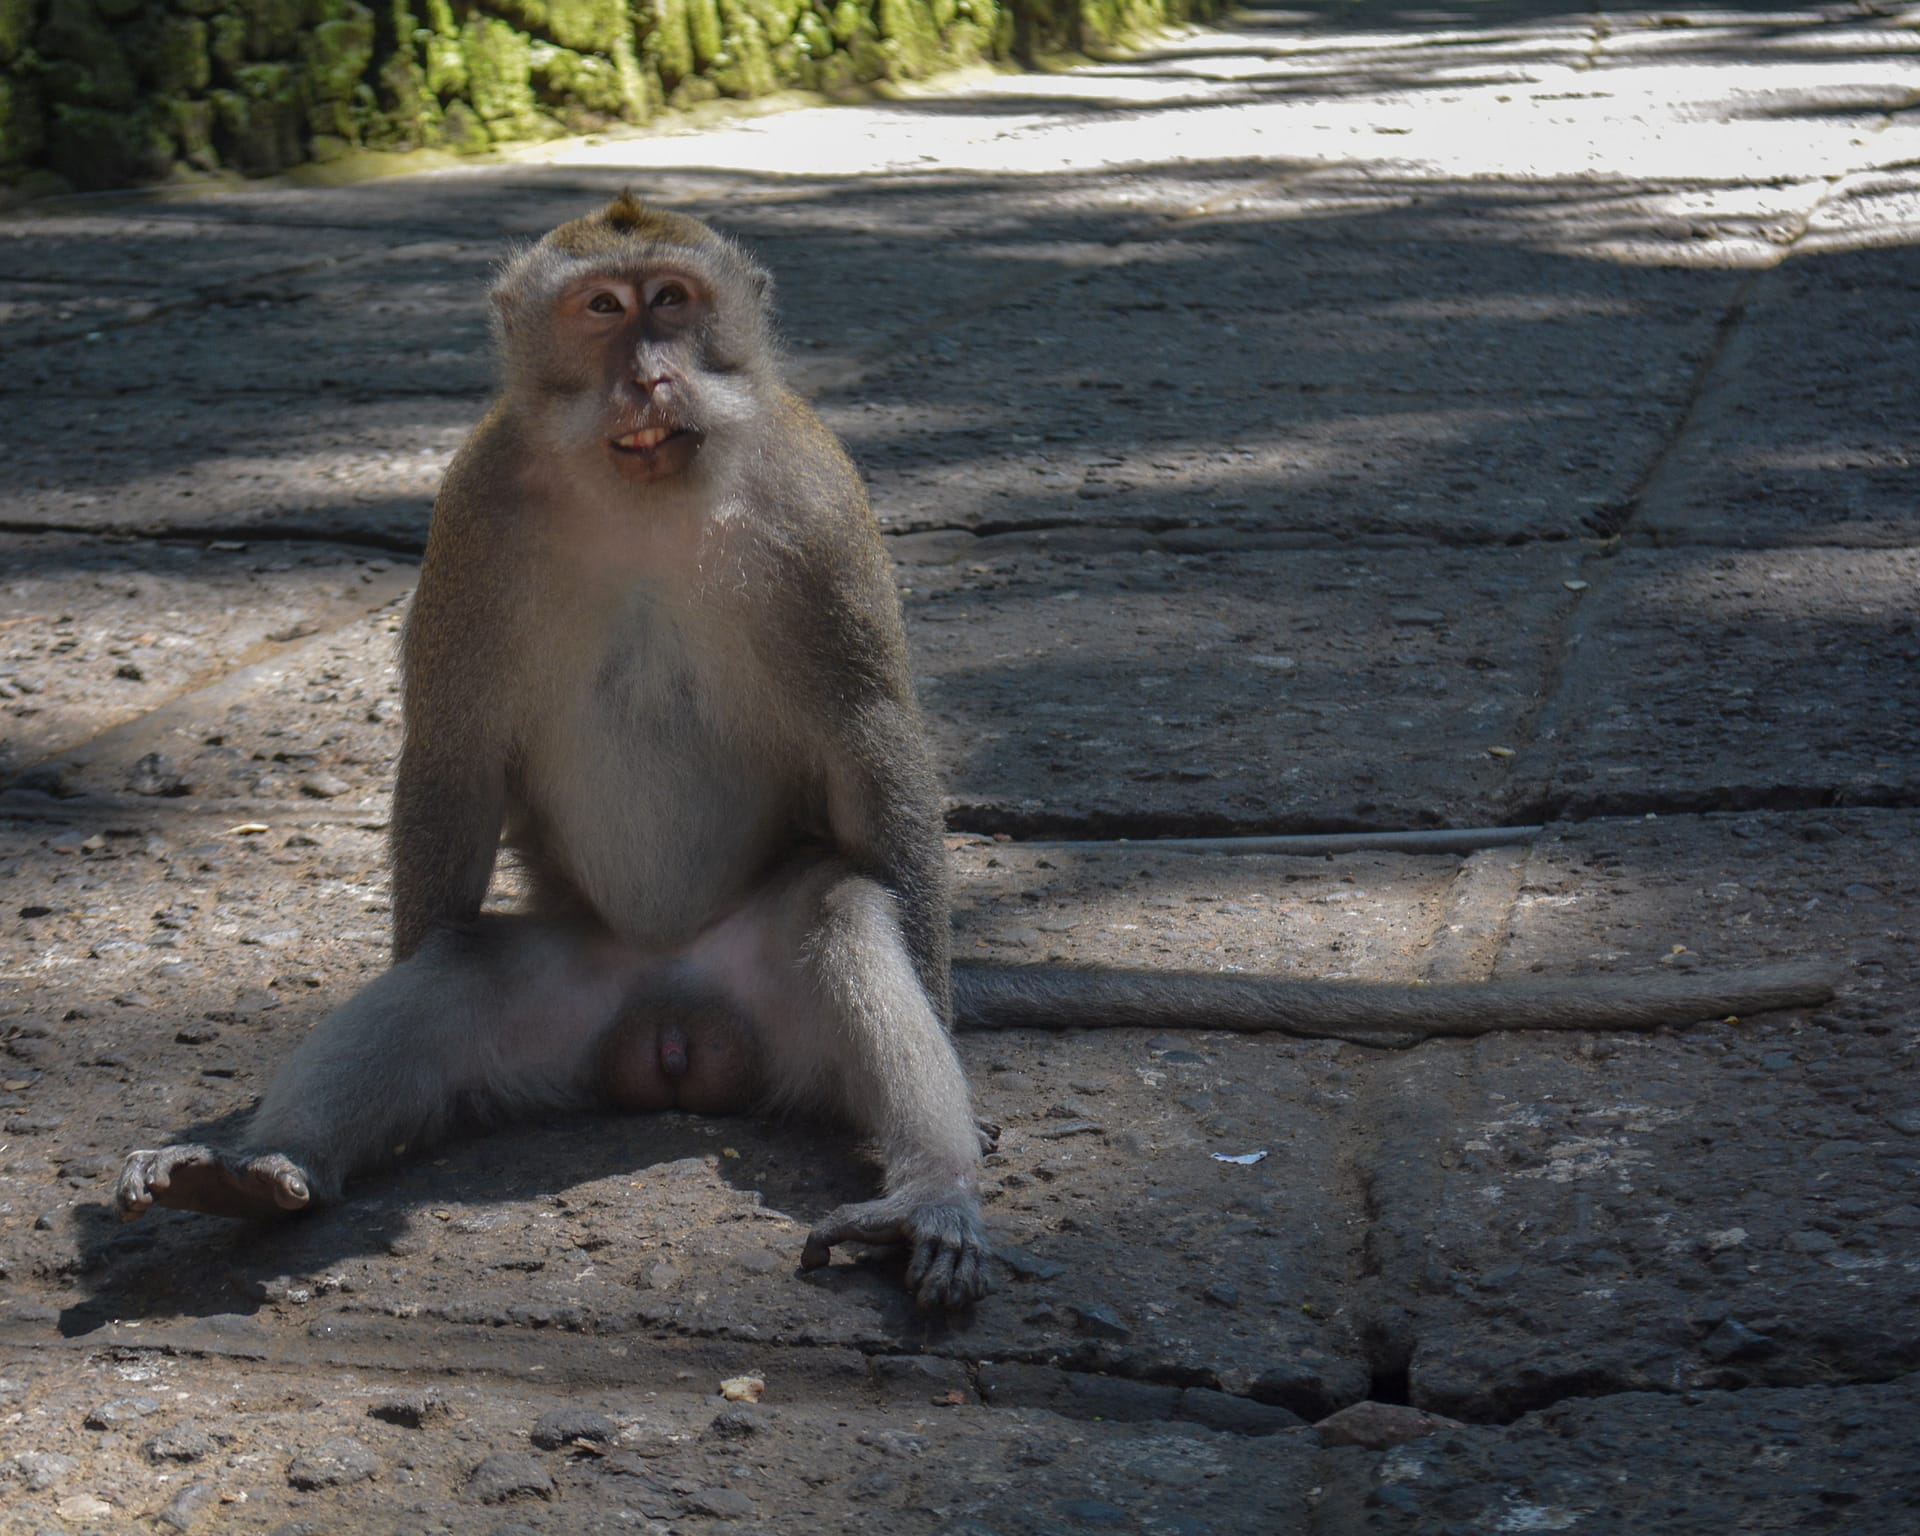 avoid in bali, travel, monkey